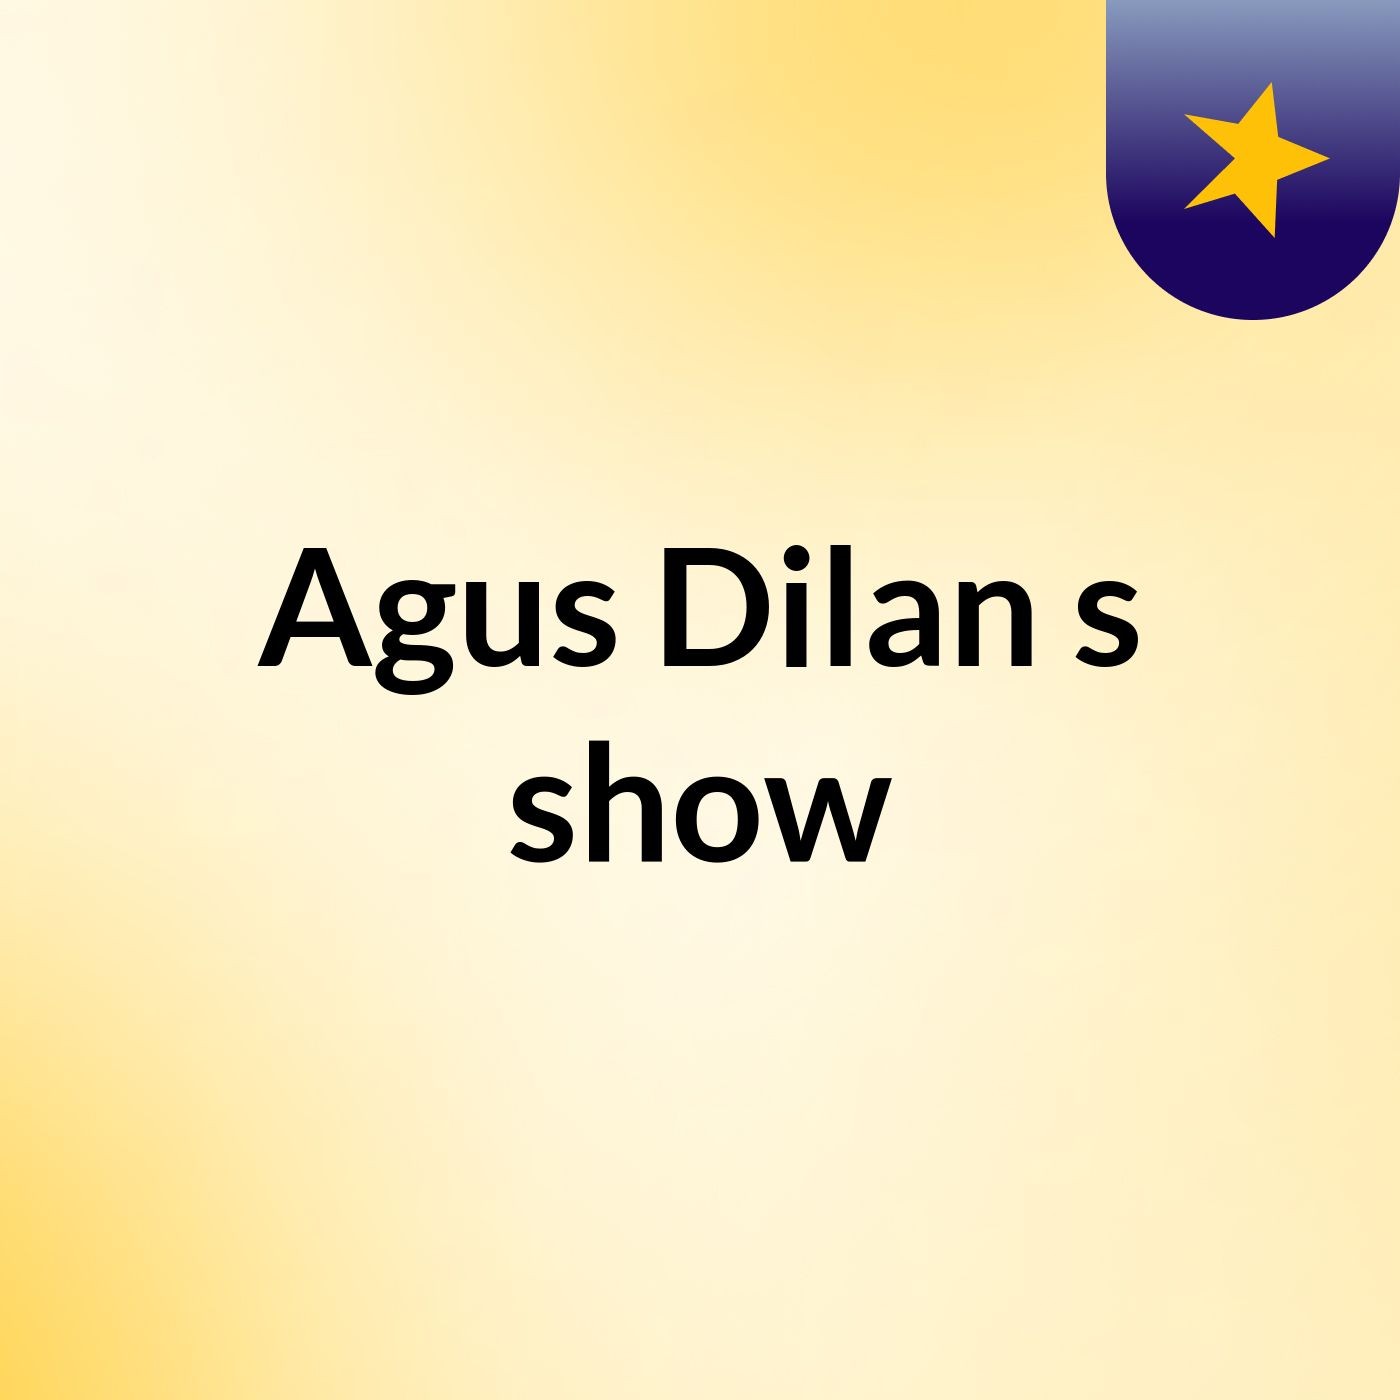 Episode 3 - Agus Dilan's show